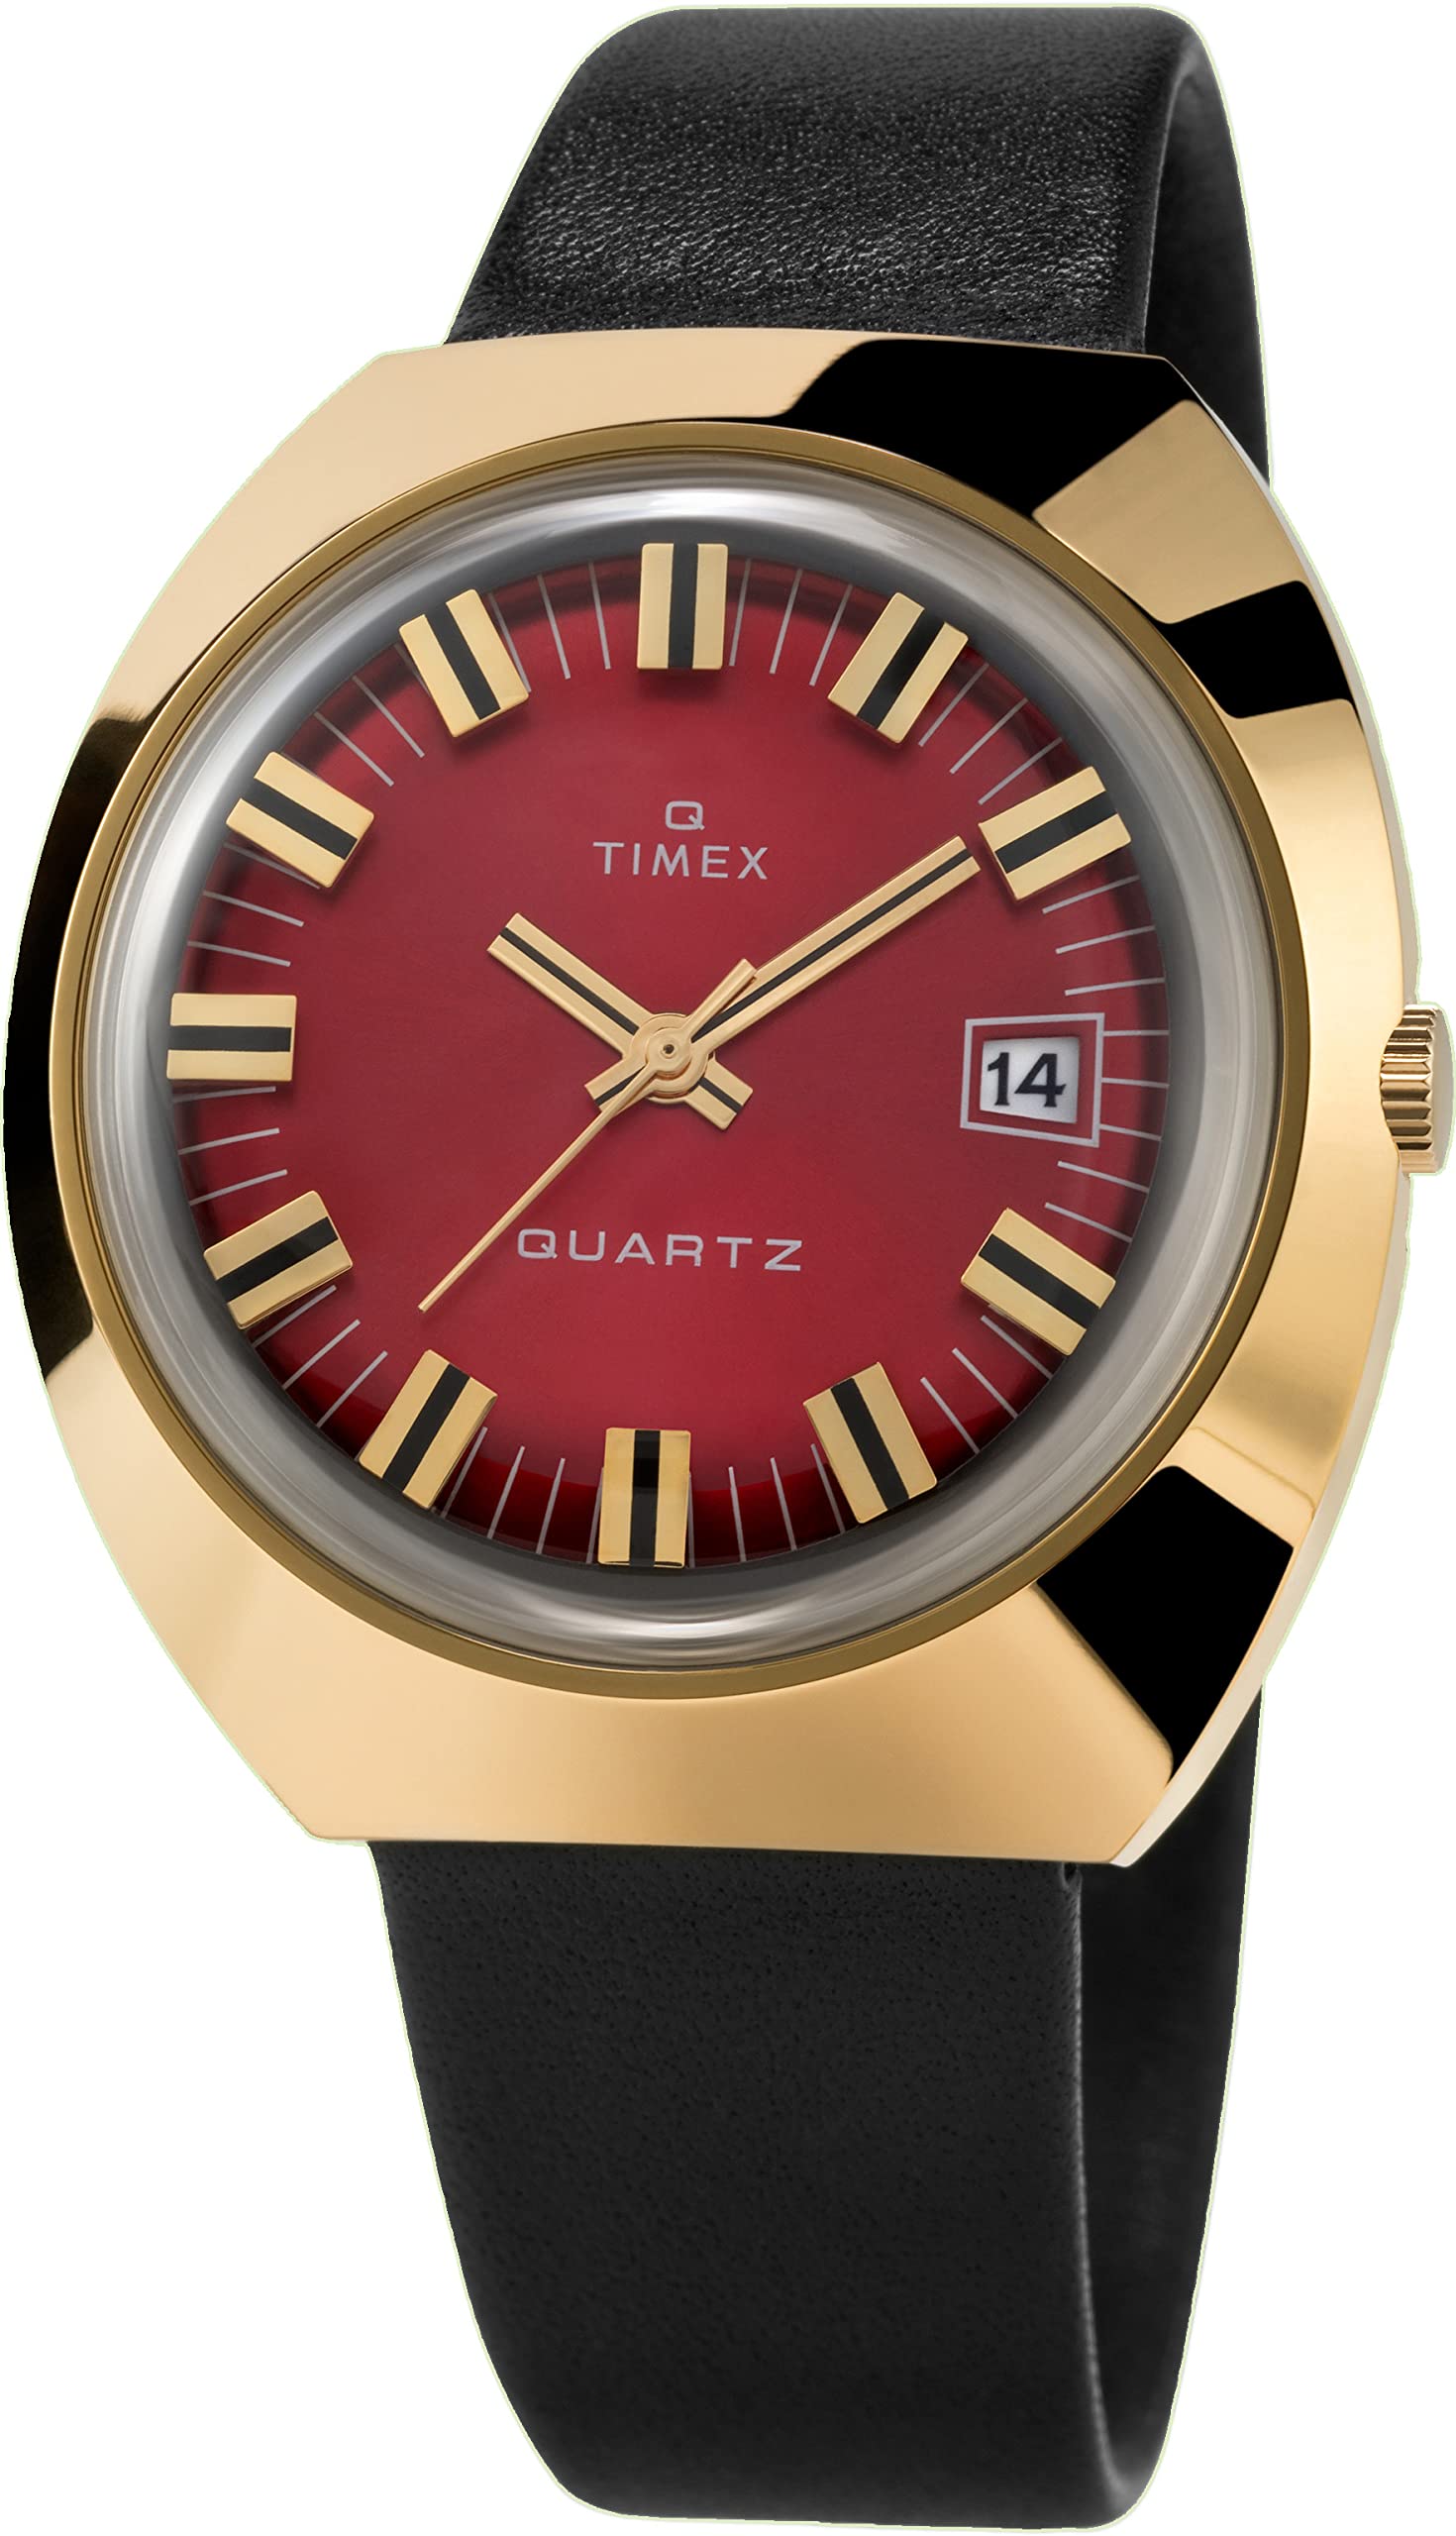 Timex Men's Q 1972 Reissue Date 43mm Quartz Watch